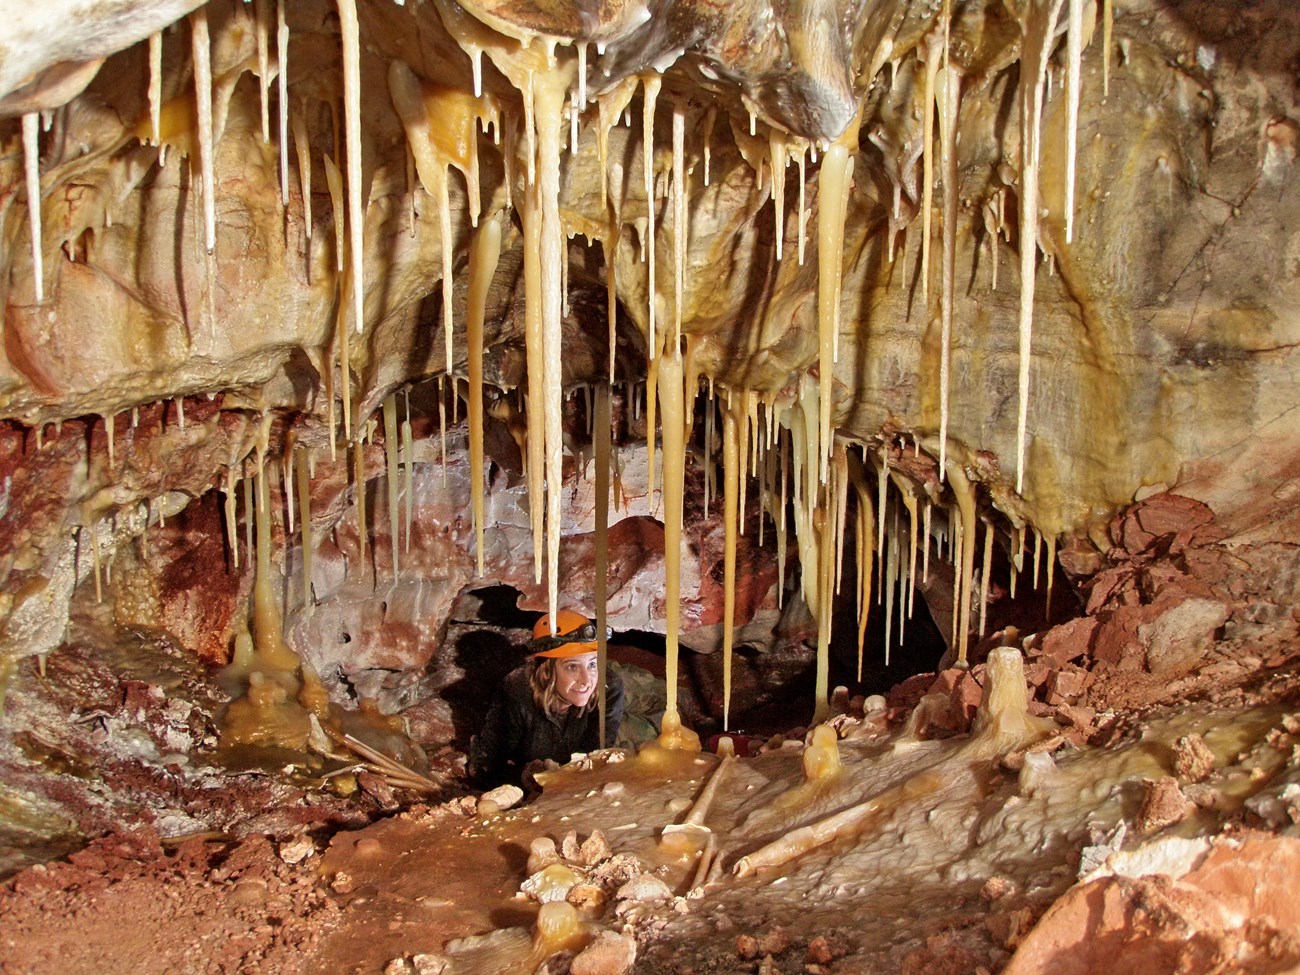 Speleothems - Caves and Karst (U.S. National Park Service)